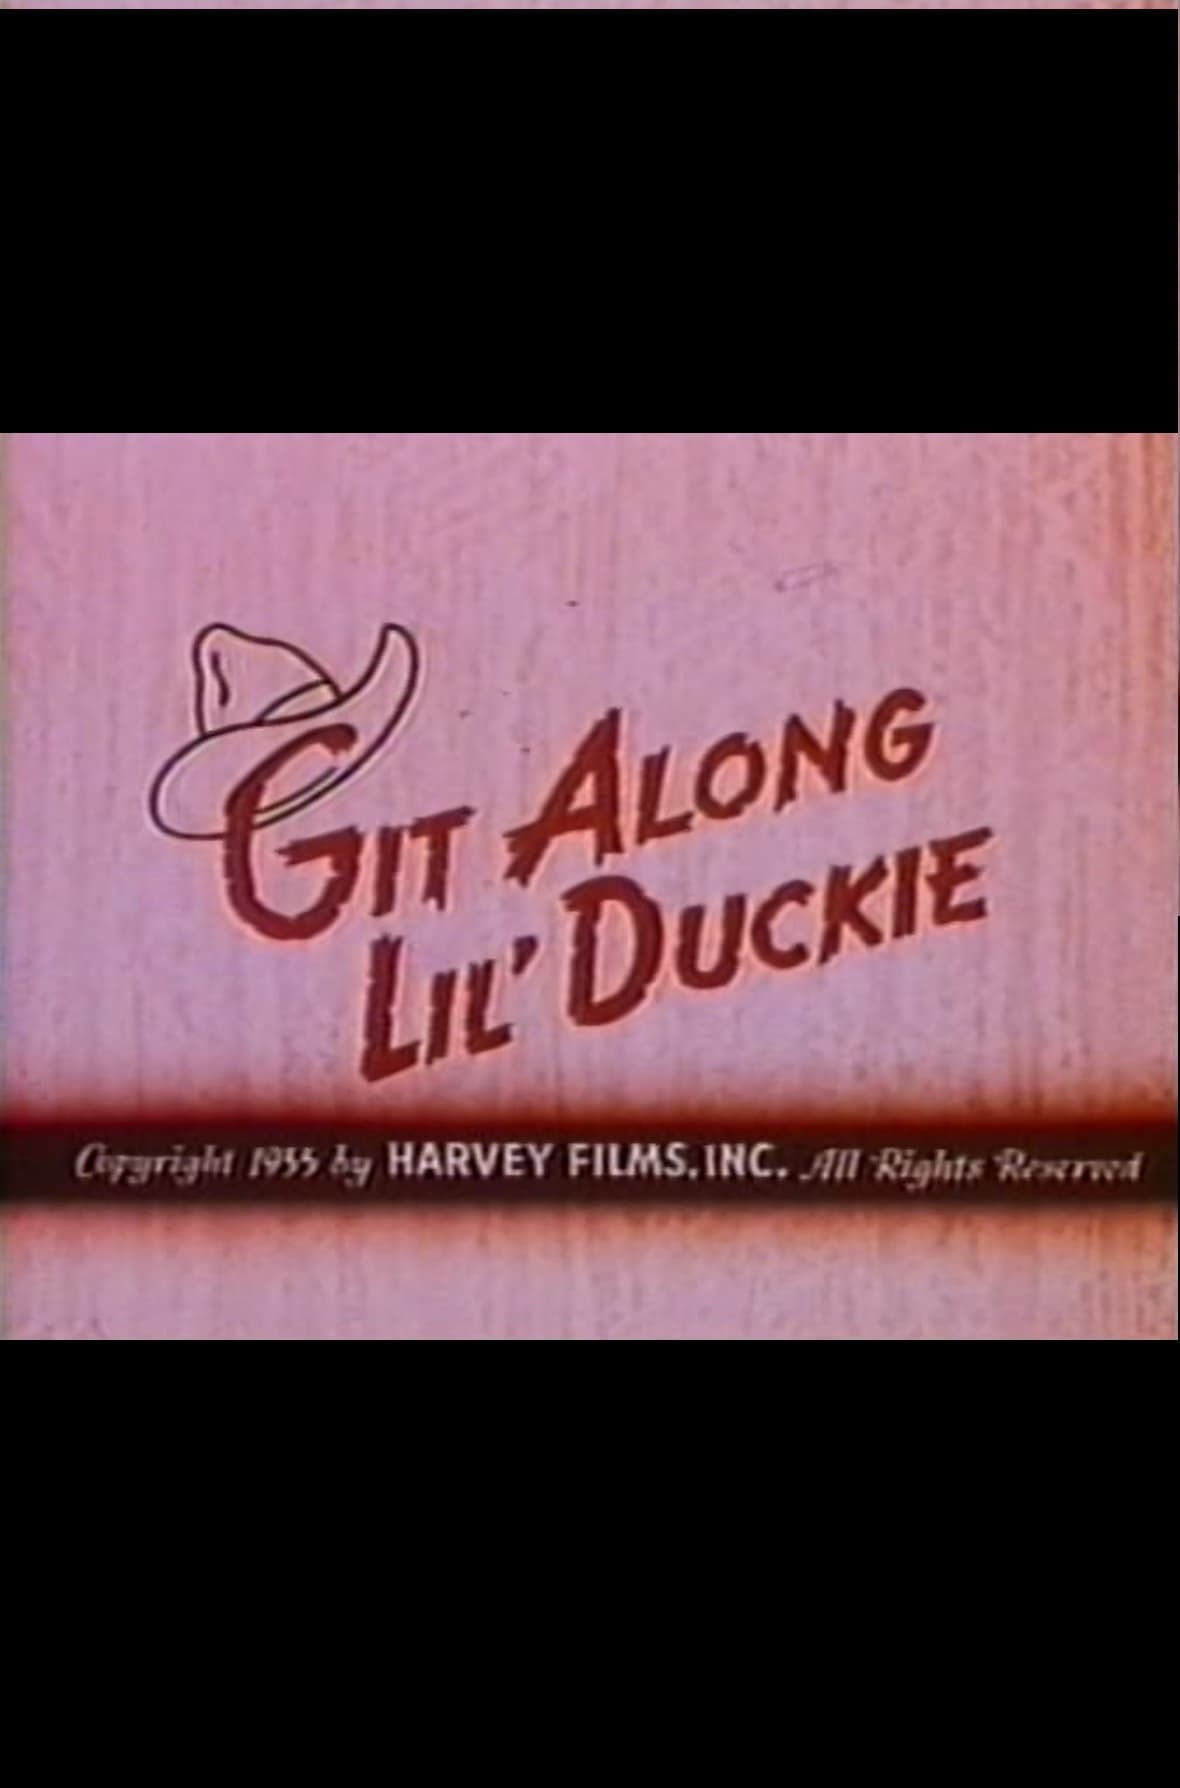 Git Along Lil' Duckie